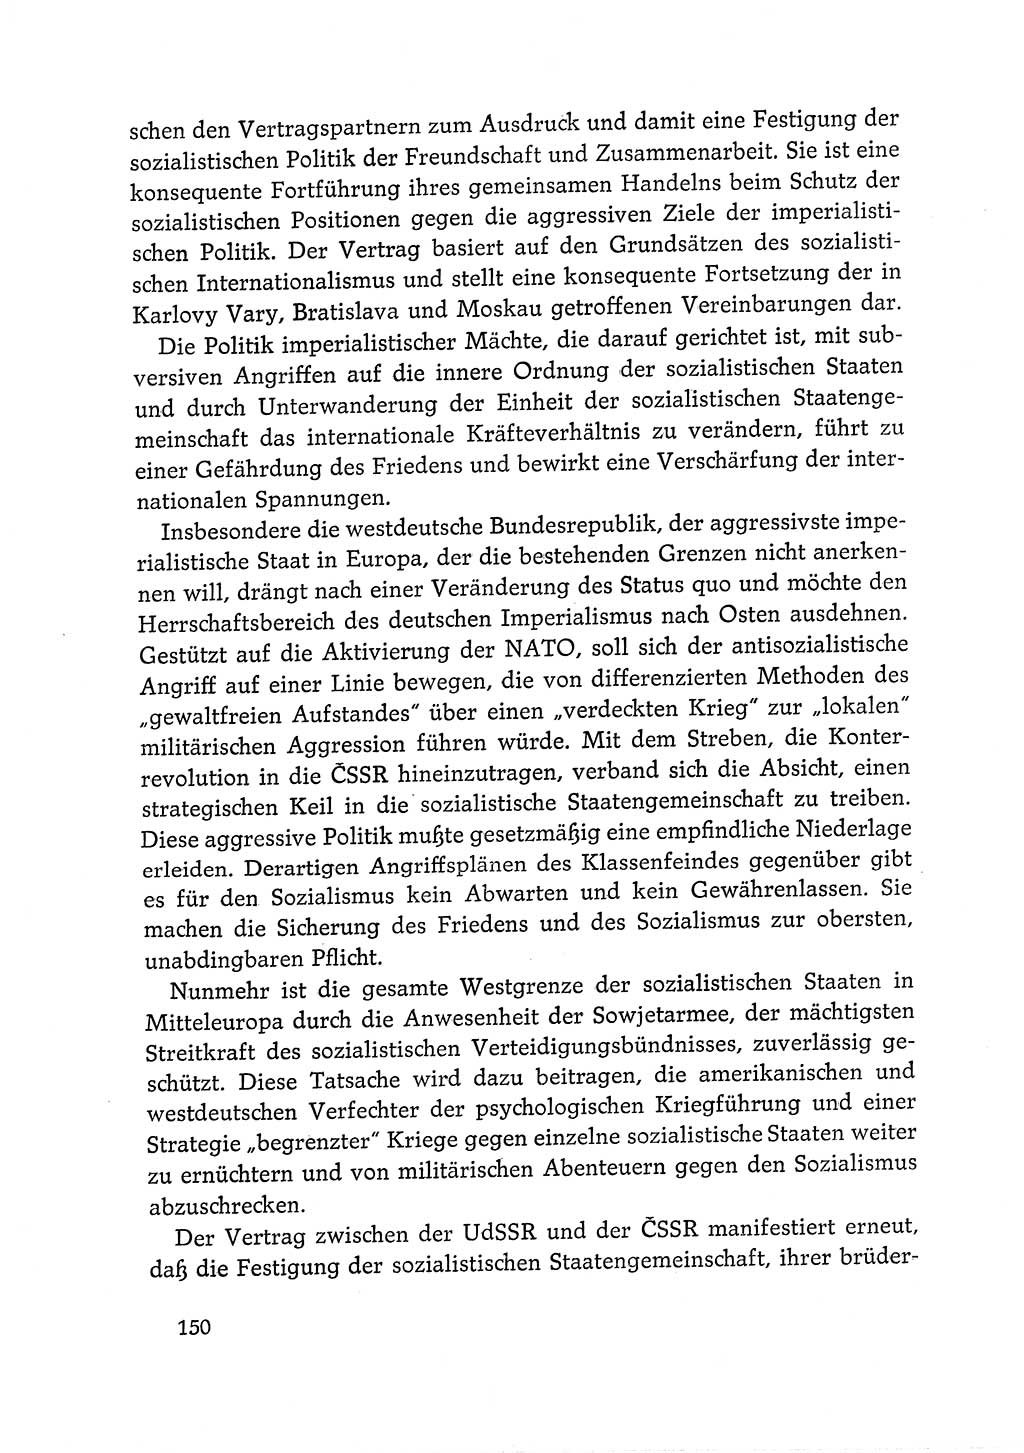 Dokumente der Sozialistischen Einheitspartei Deutschlands (SED) [Deutsche Demokratische Republik (DDR)] 1968-1969, Seite 150 (Dok. SED DDR 1968-1969, S. 150)